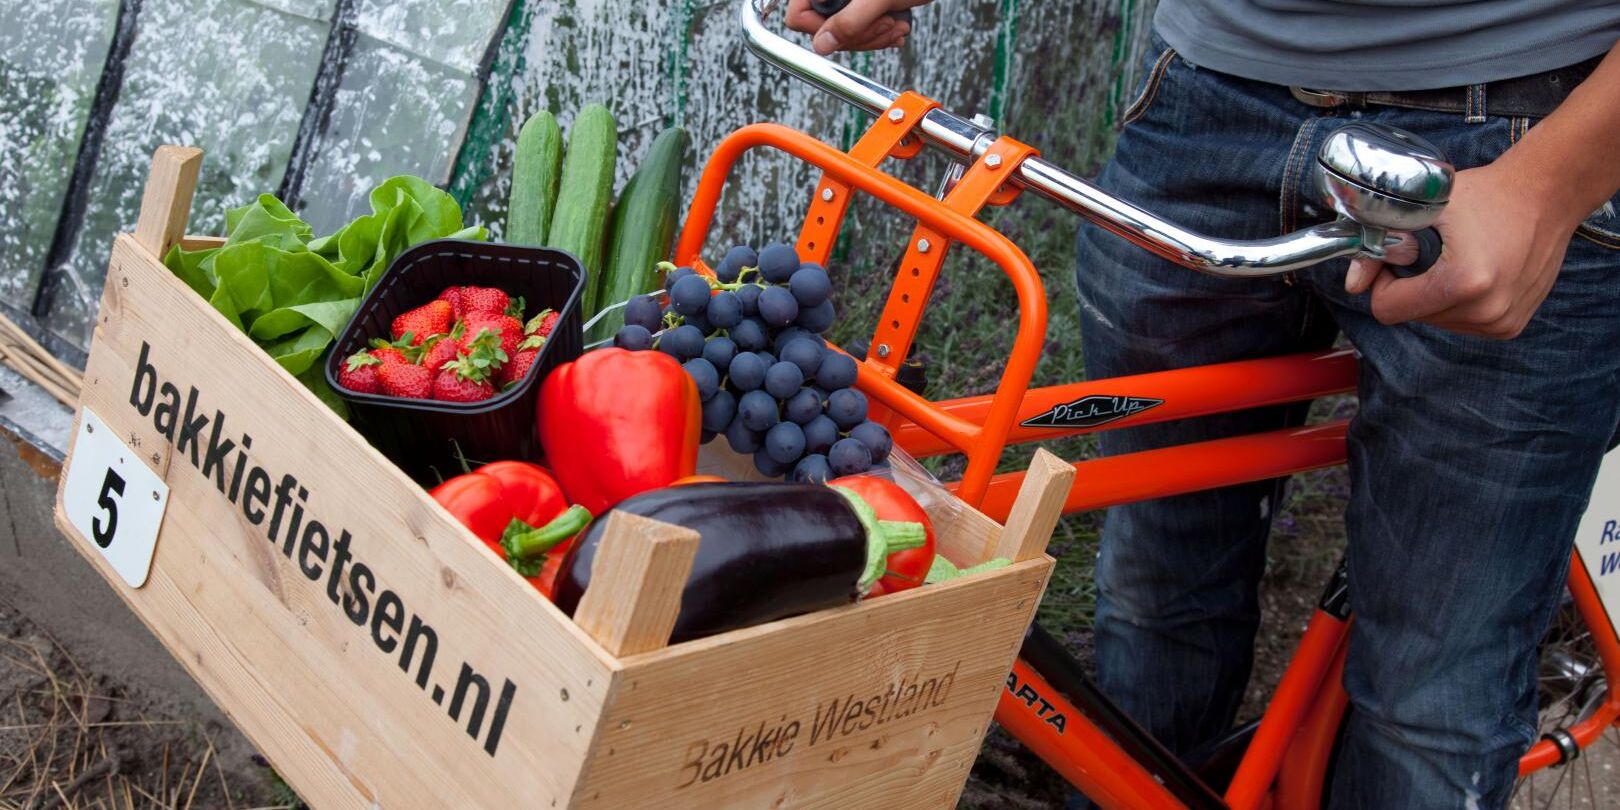 rode fiets met een houten kratje (bakkie) voorop met daarin Westlandse groenten bij Bakkie Fietsen in het Westland